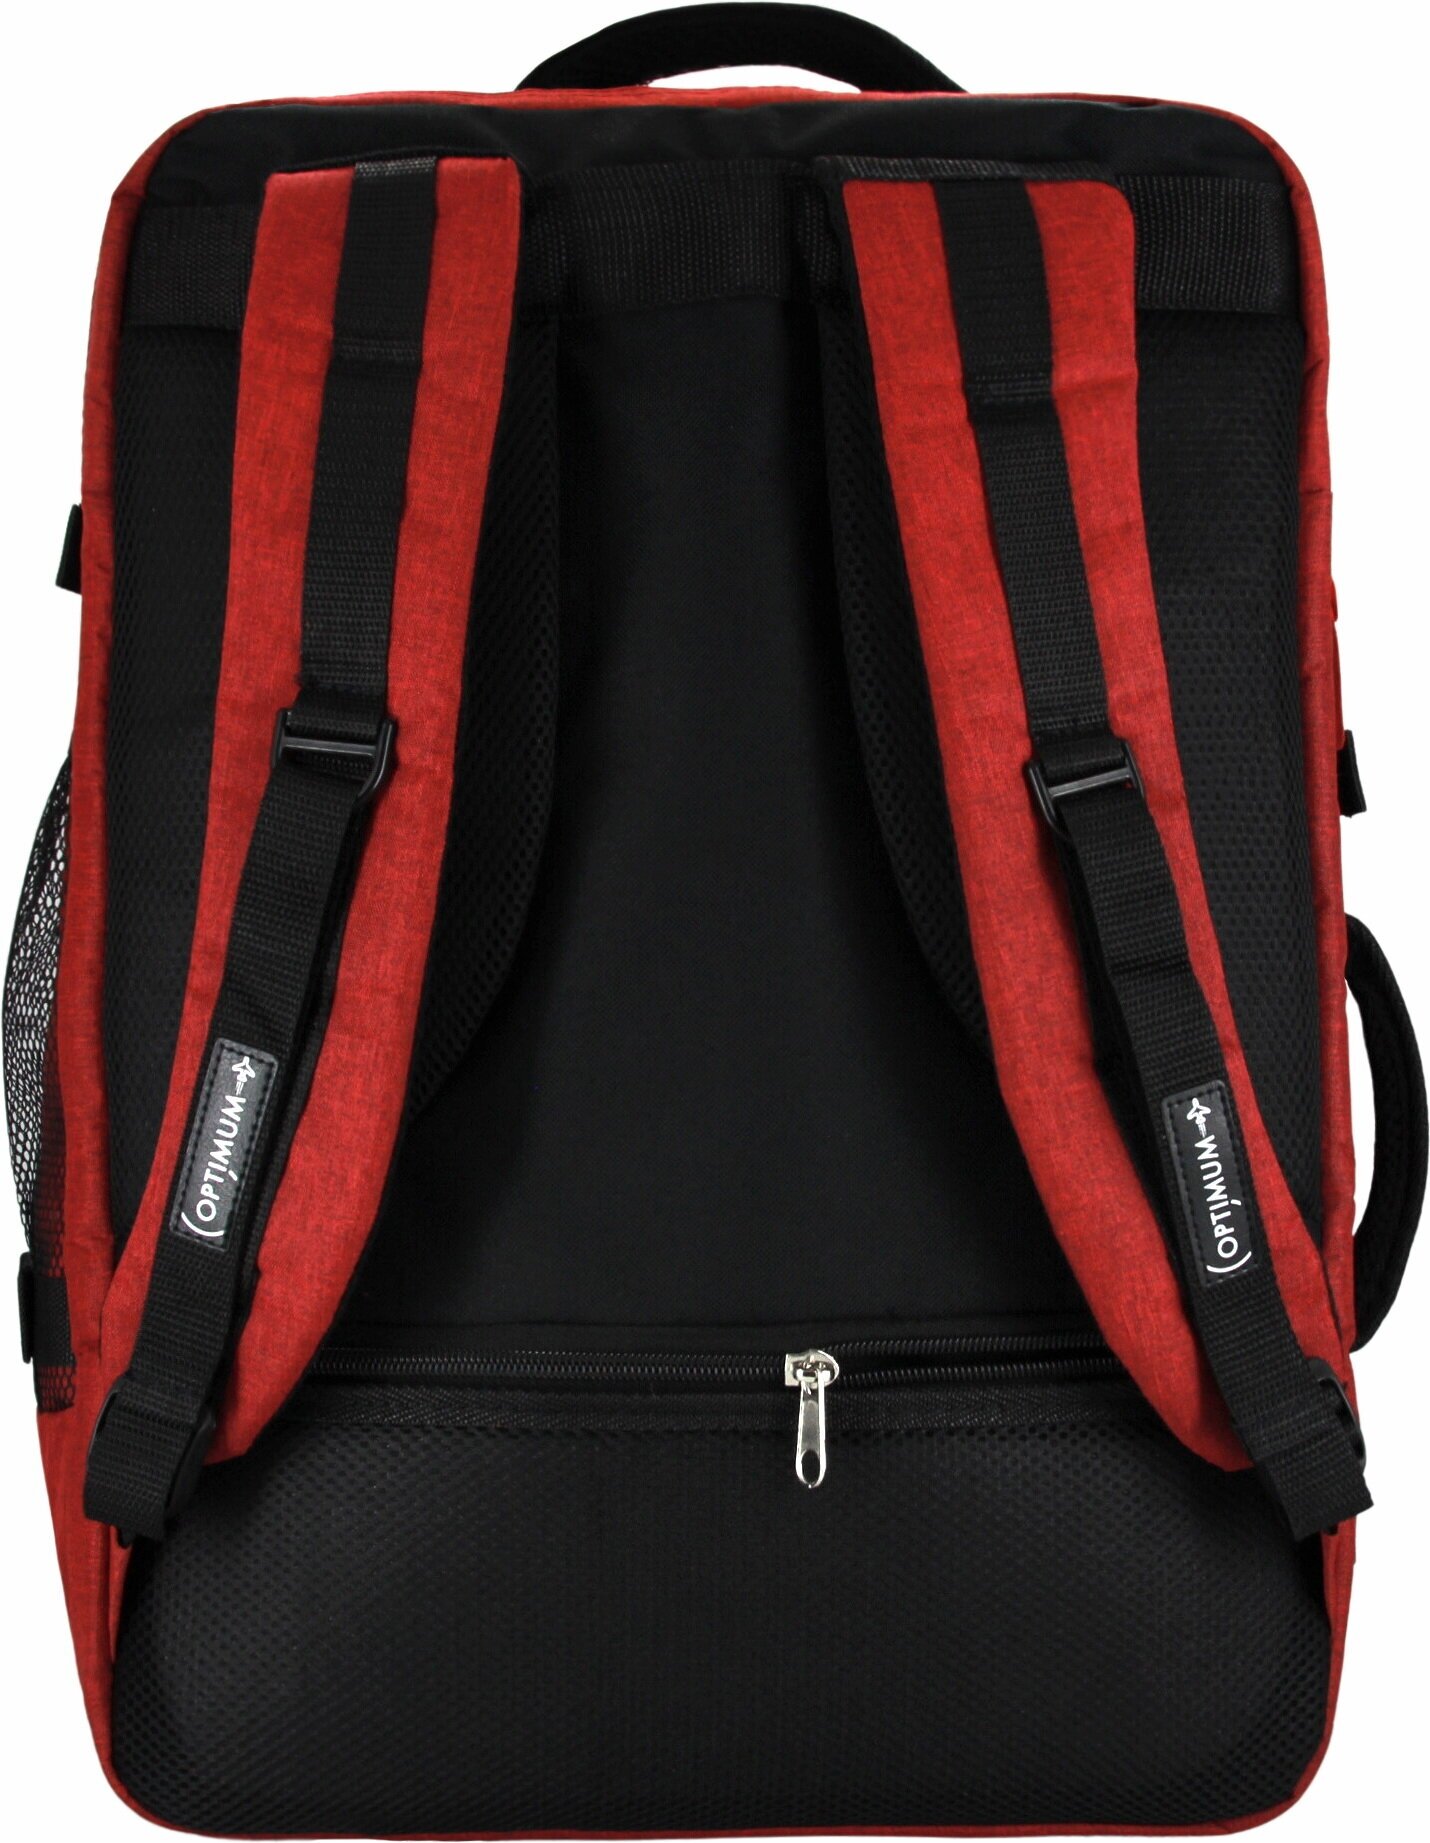 Сумка дорожная сумка-рюкзак Optimum, 44 л, 55х40х20 см, ручная кладь, отделение для ноутбука, фиксирующие ремни, водонепроницаемая, красный - фотография № 12